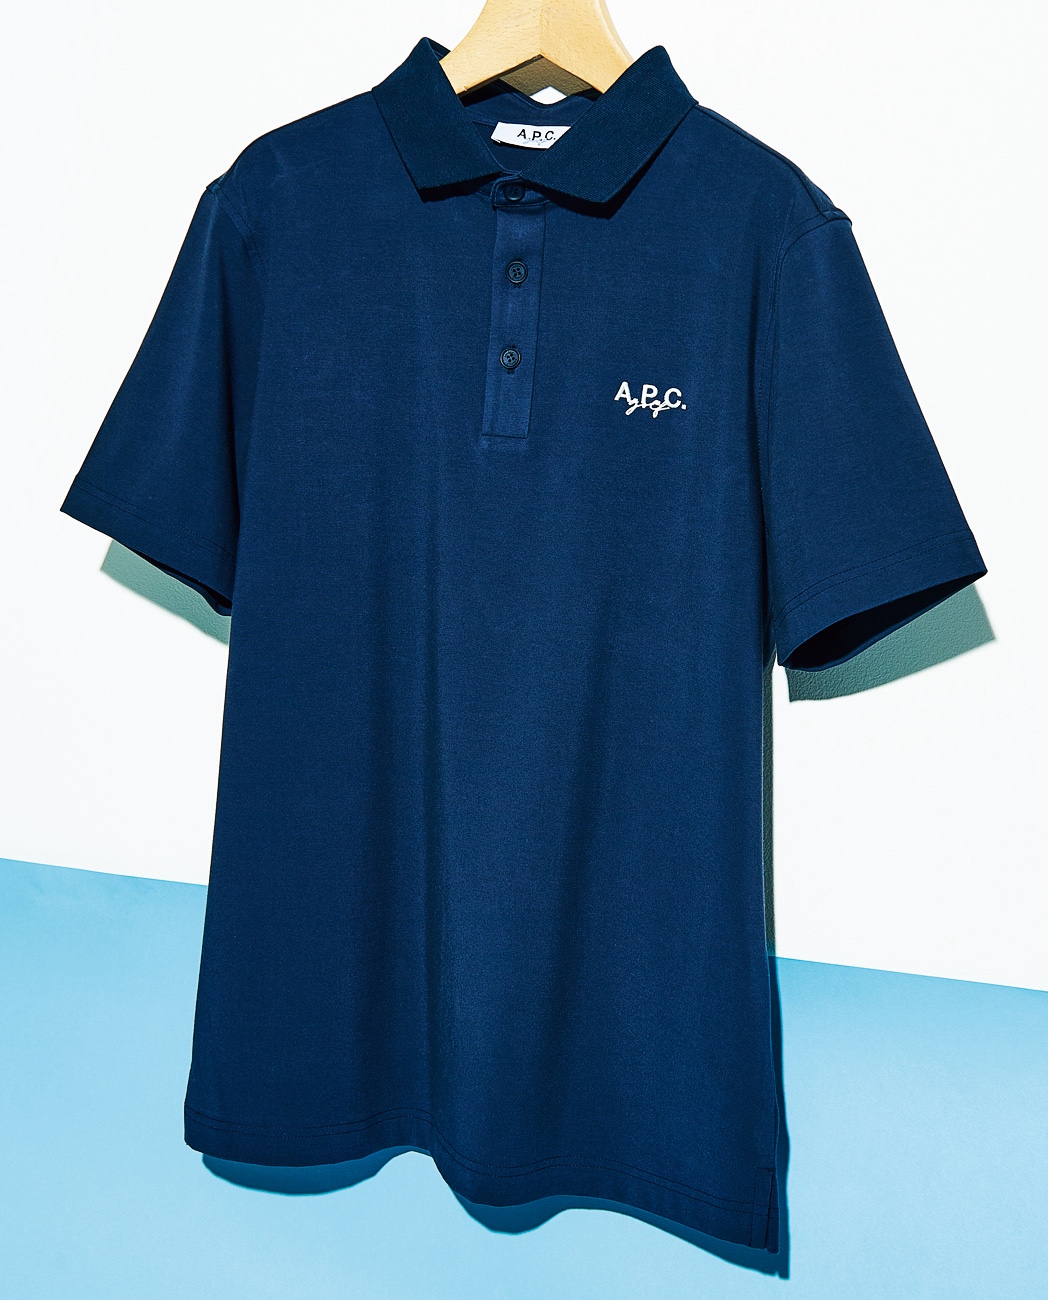 A.P.C. GOLFのポロシャツ